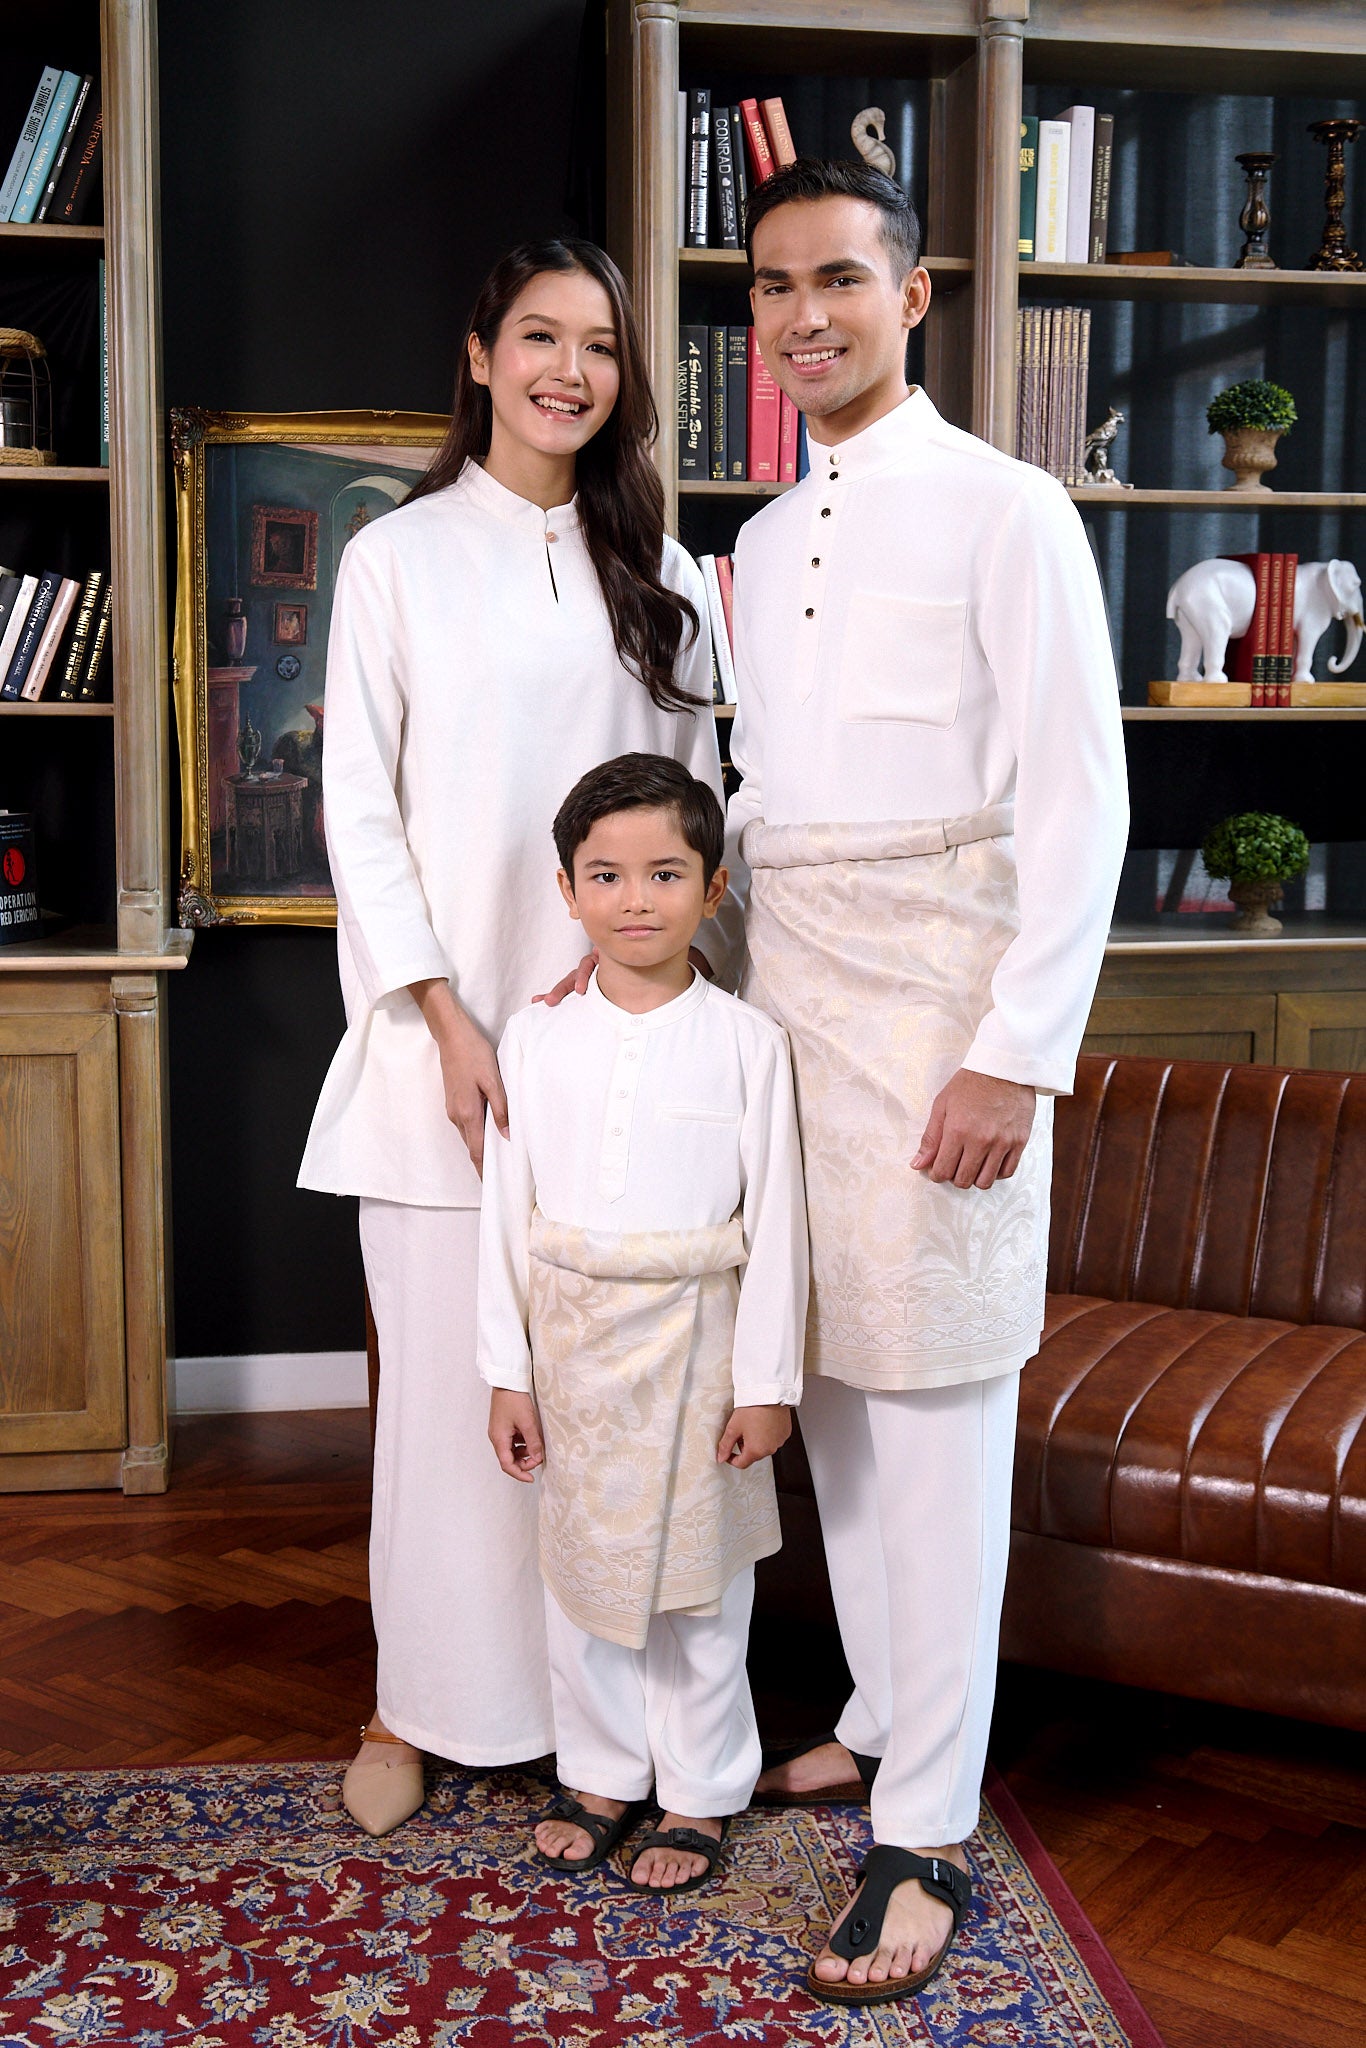 The Warisan Raya Boy Baju Melayu Set White